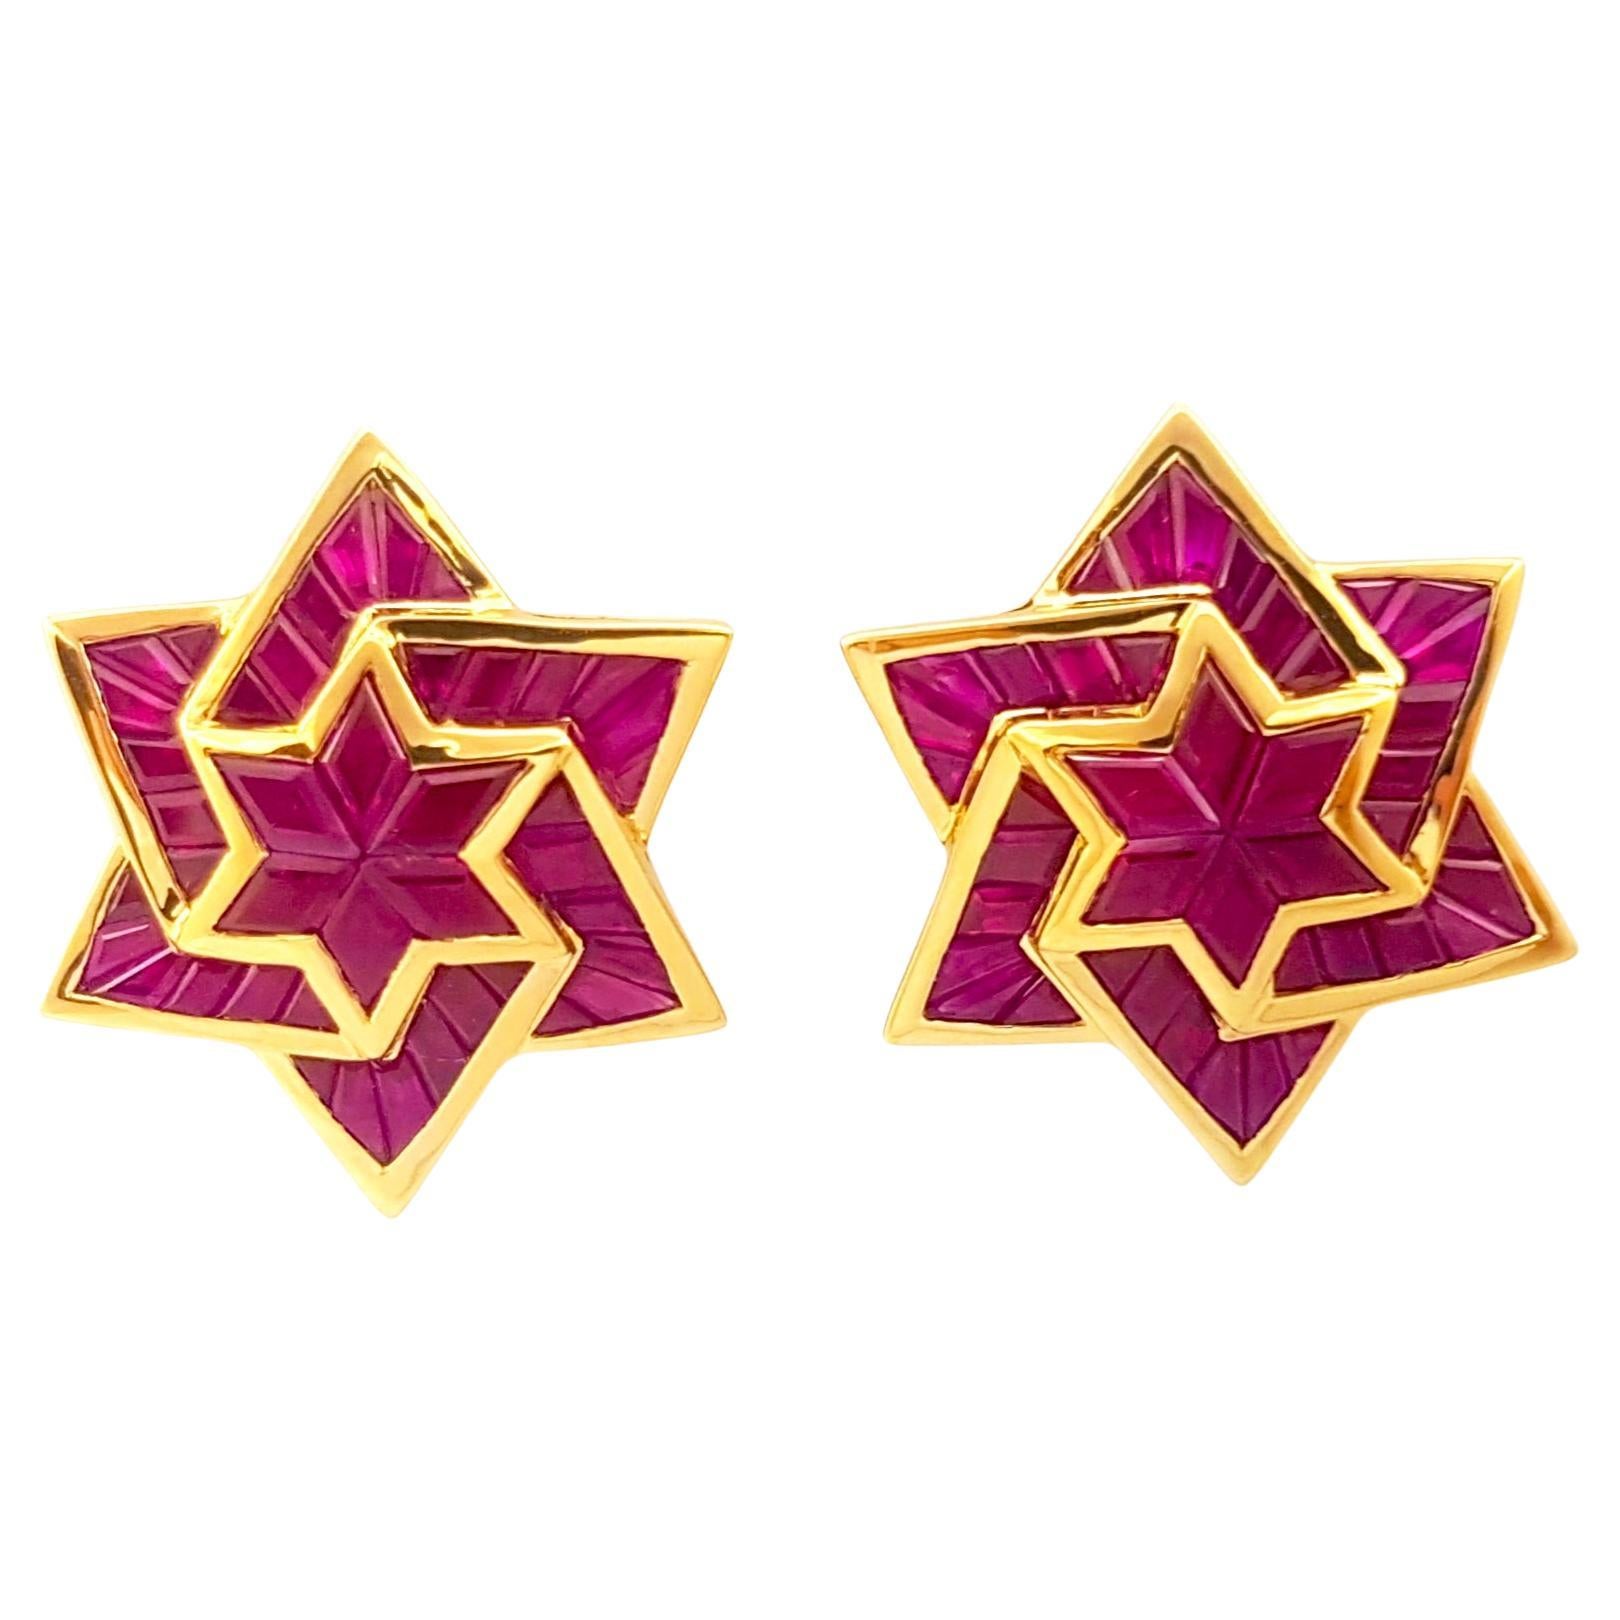 Ruby Star Earrings set in 18K Gold Settings